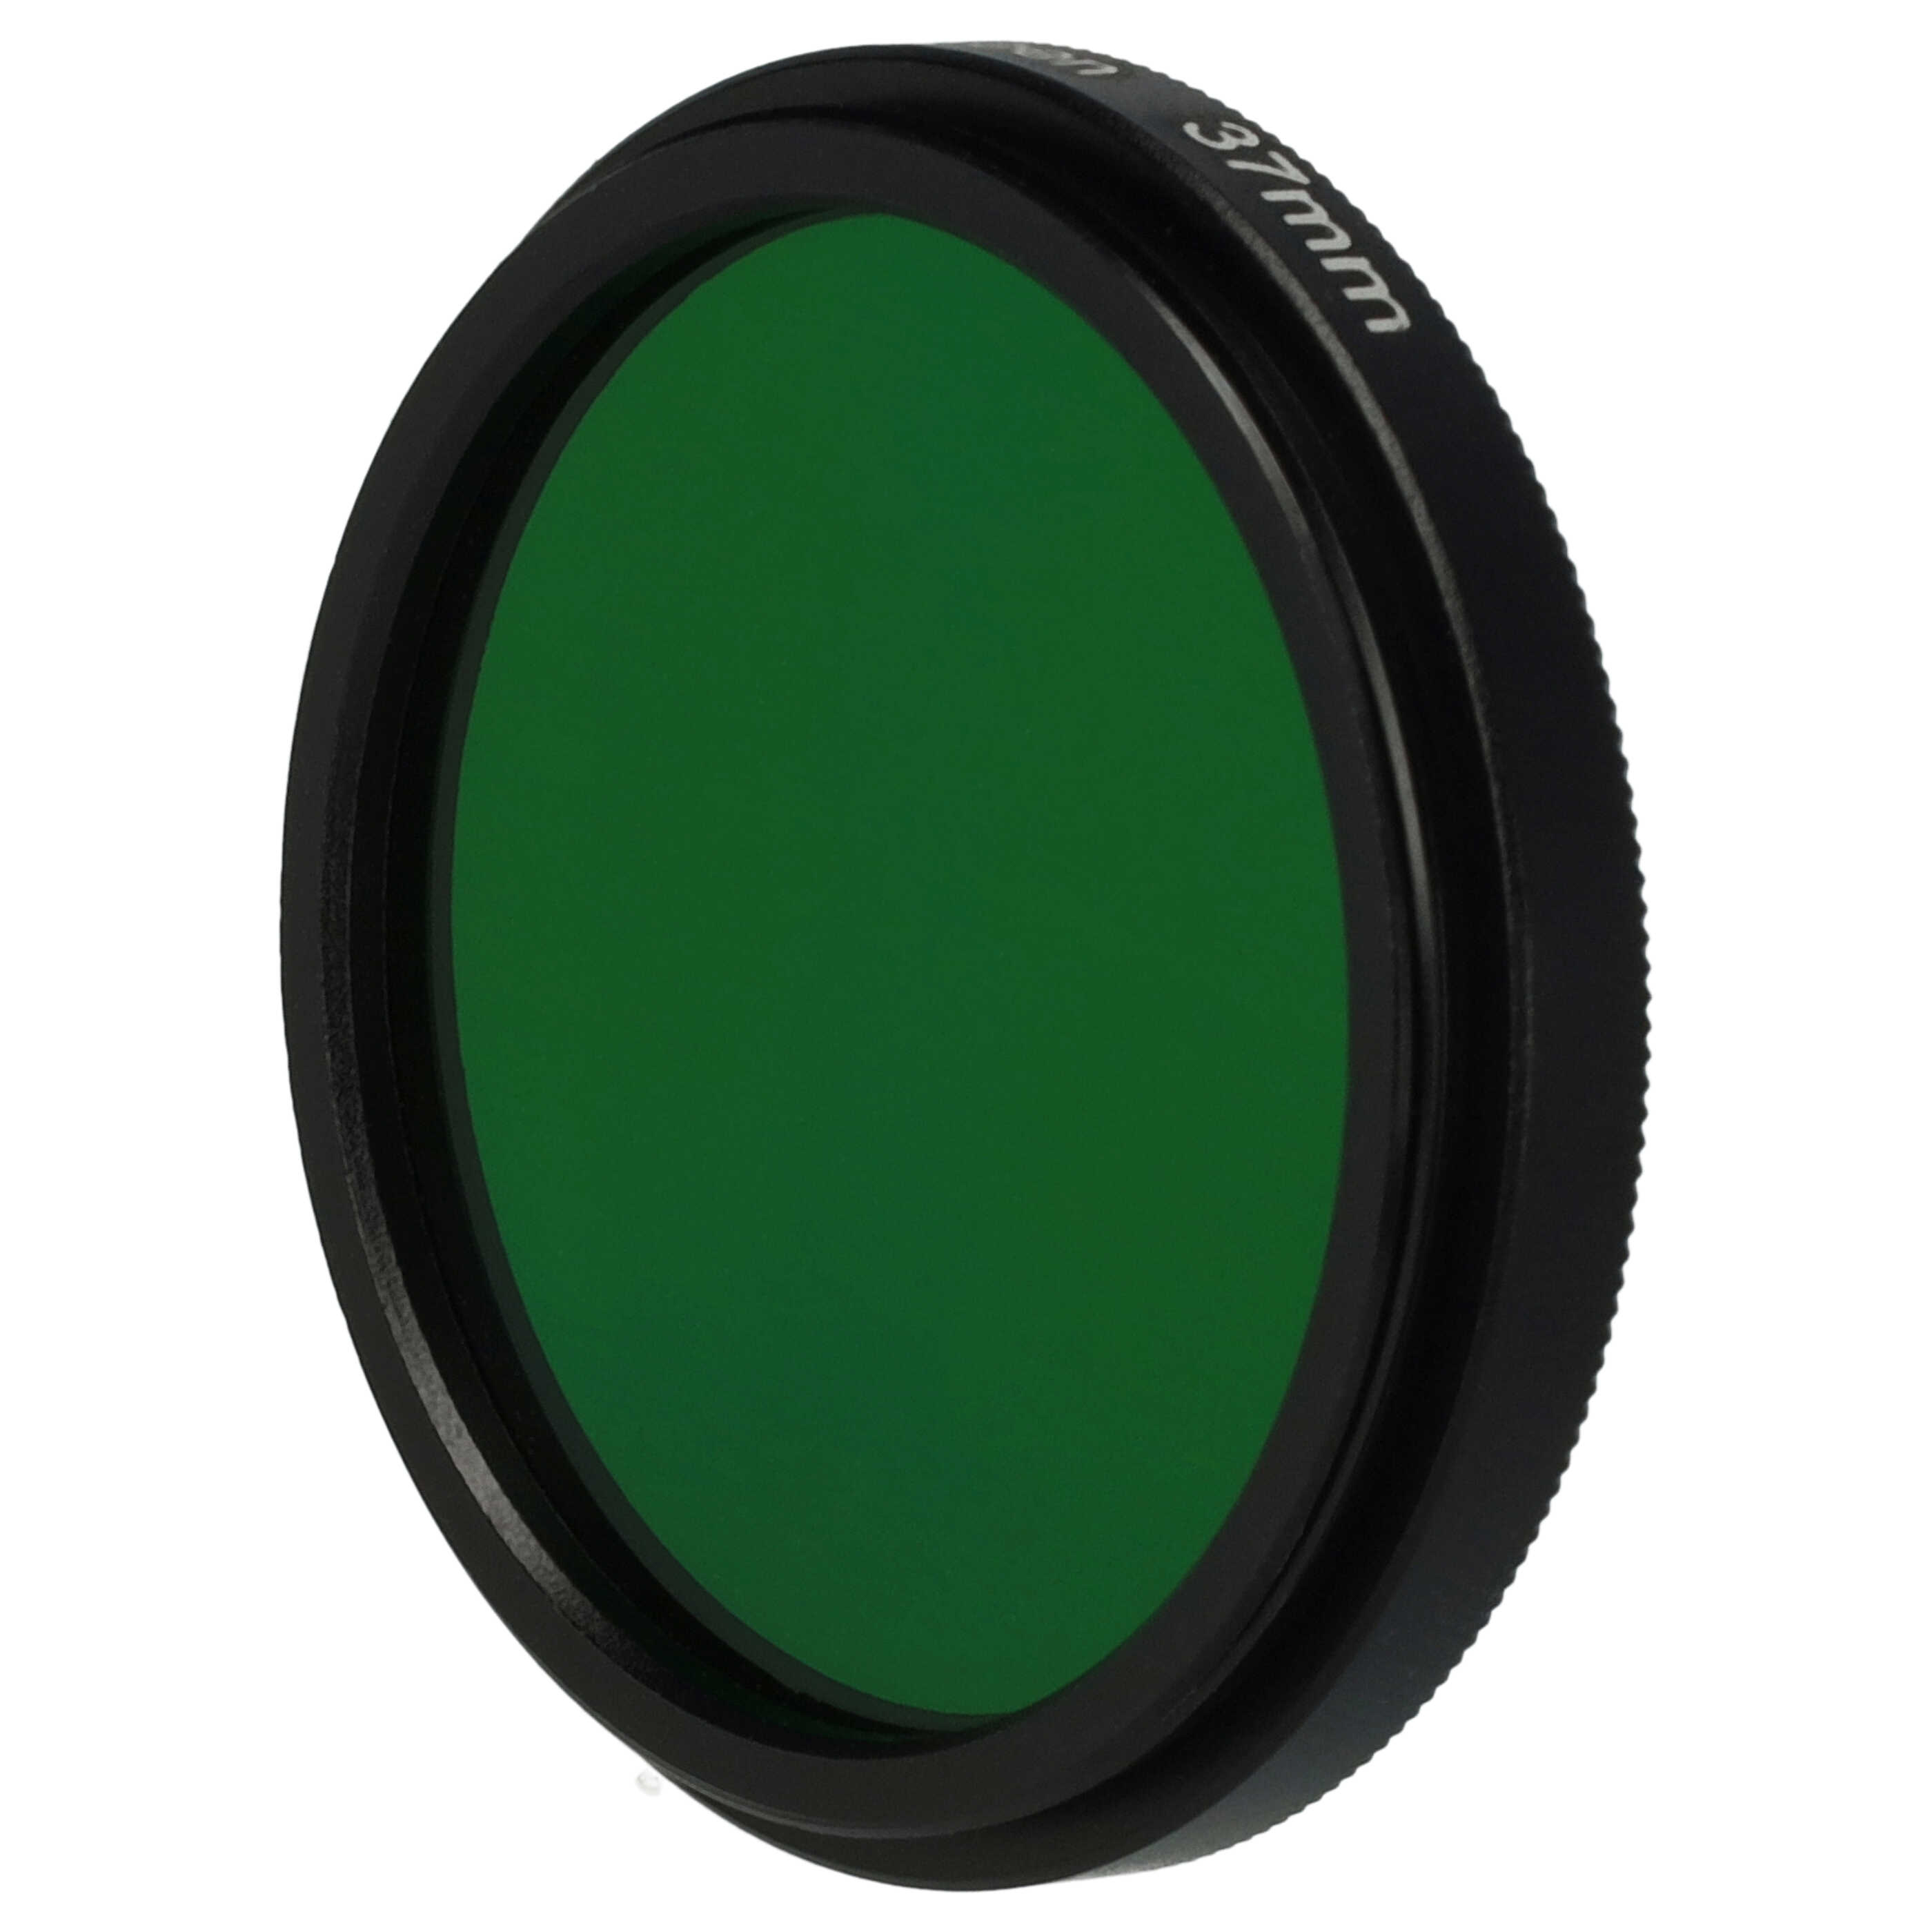 Filtre de couleur vert pour objectifs d'appareils photo de 37 mm - Filtre vert